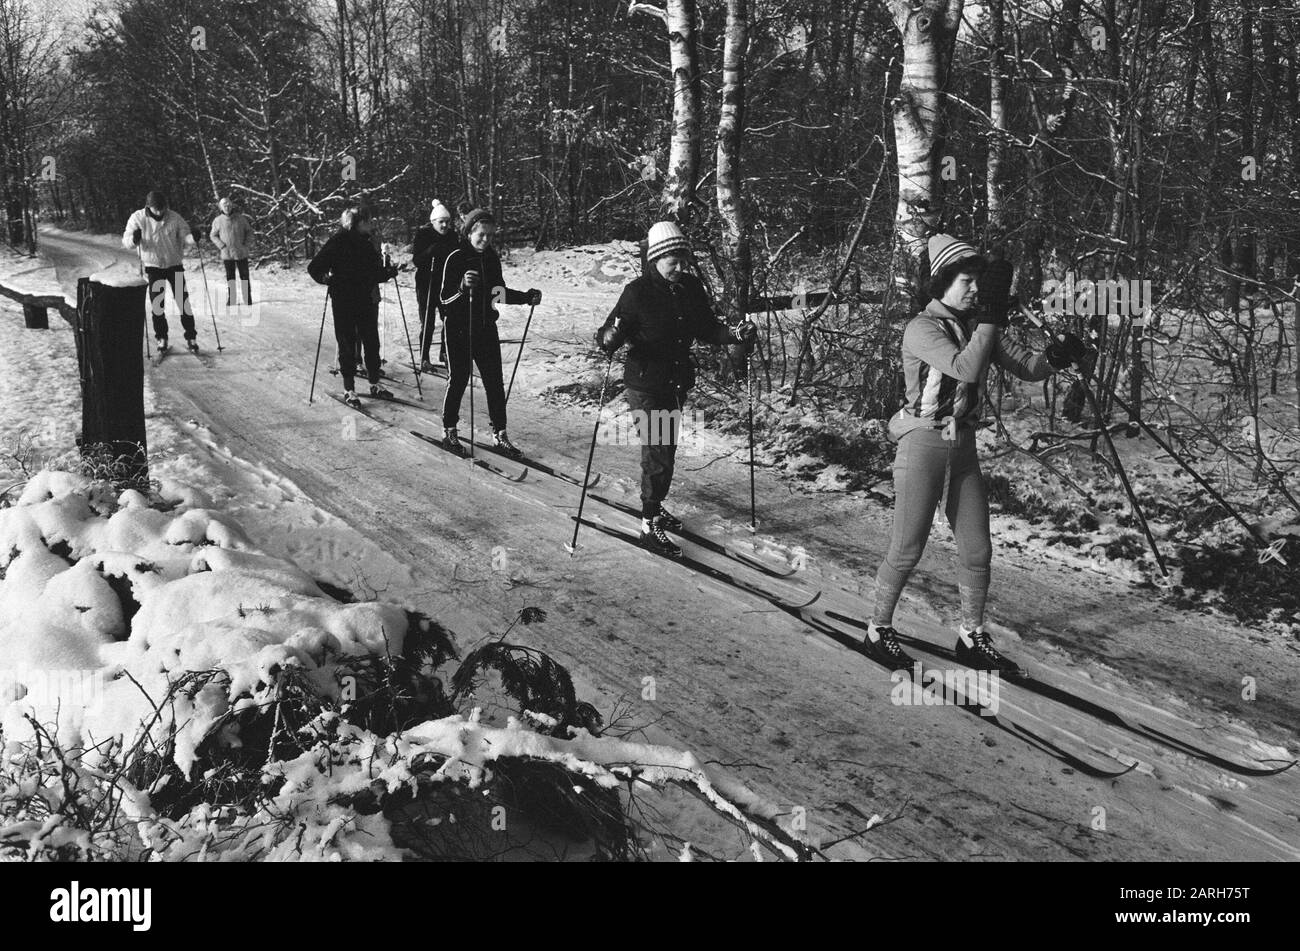 Les sports d'hiver par la neige et le gel intense dans de nombreux endroits ont été des skis de fond piégés comme ici sur le Veluwe Date: 5 janvier 1985 lieu: Gueldre, Veluwe mots clés: Ski de fond Banque D'Images